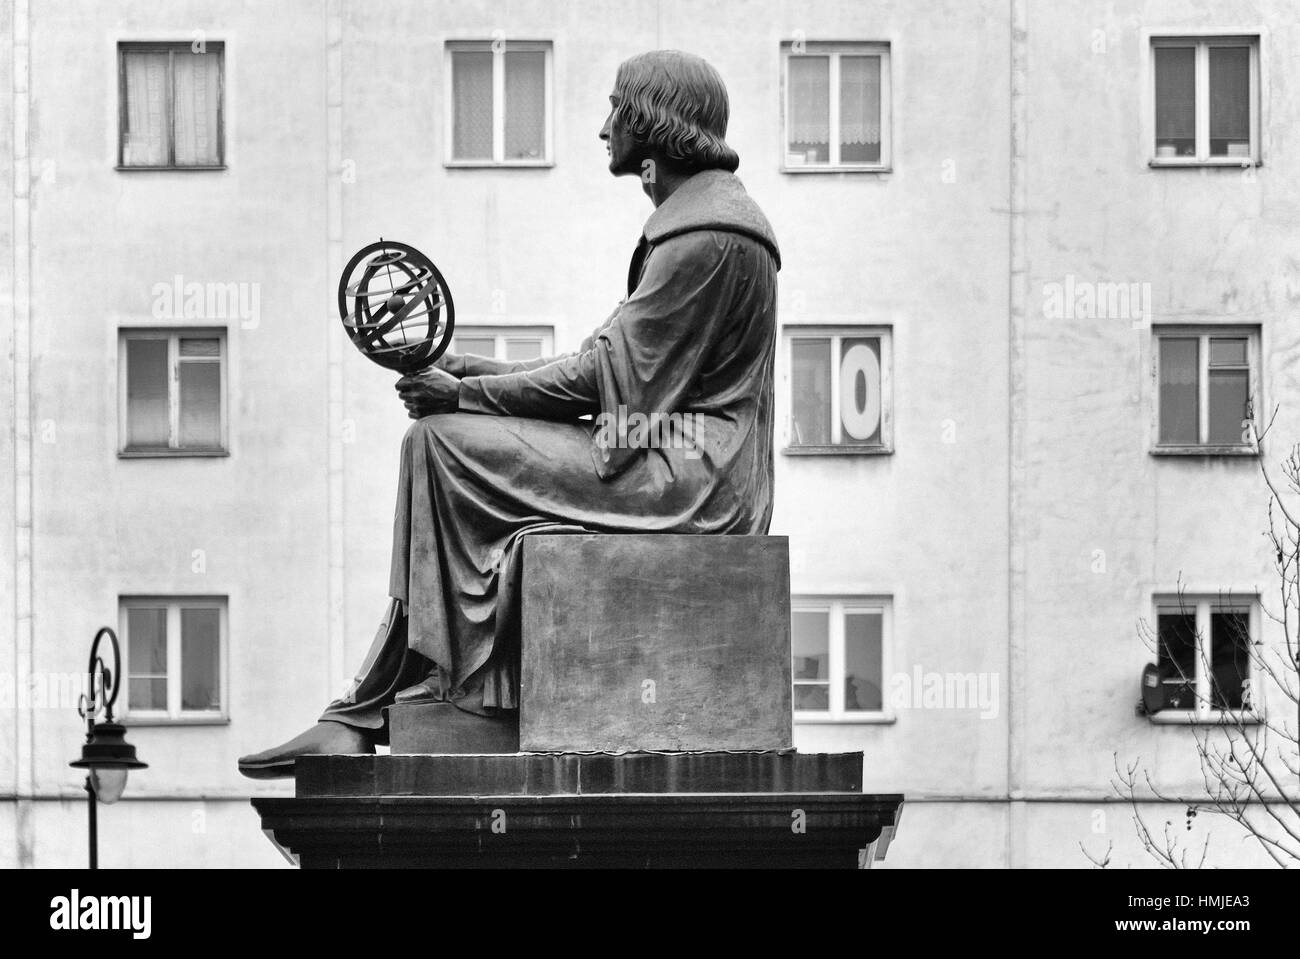 Nicolaus Copernicus - Mikolaj Kopernik - statue, Nowy Swiat street, Warsaw, Poland, Europe Stock Photo